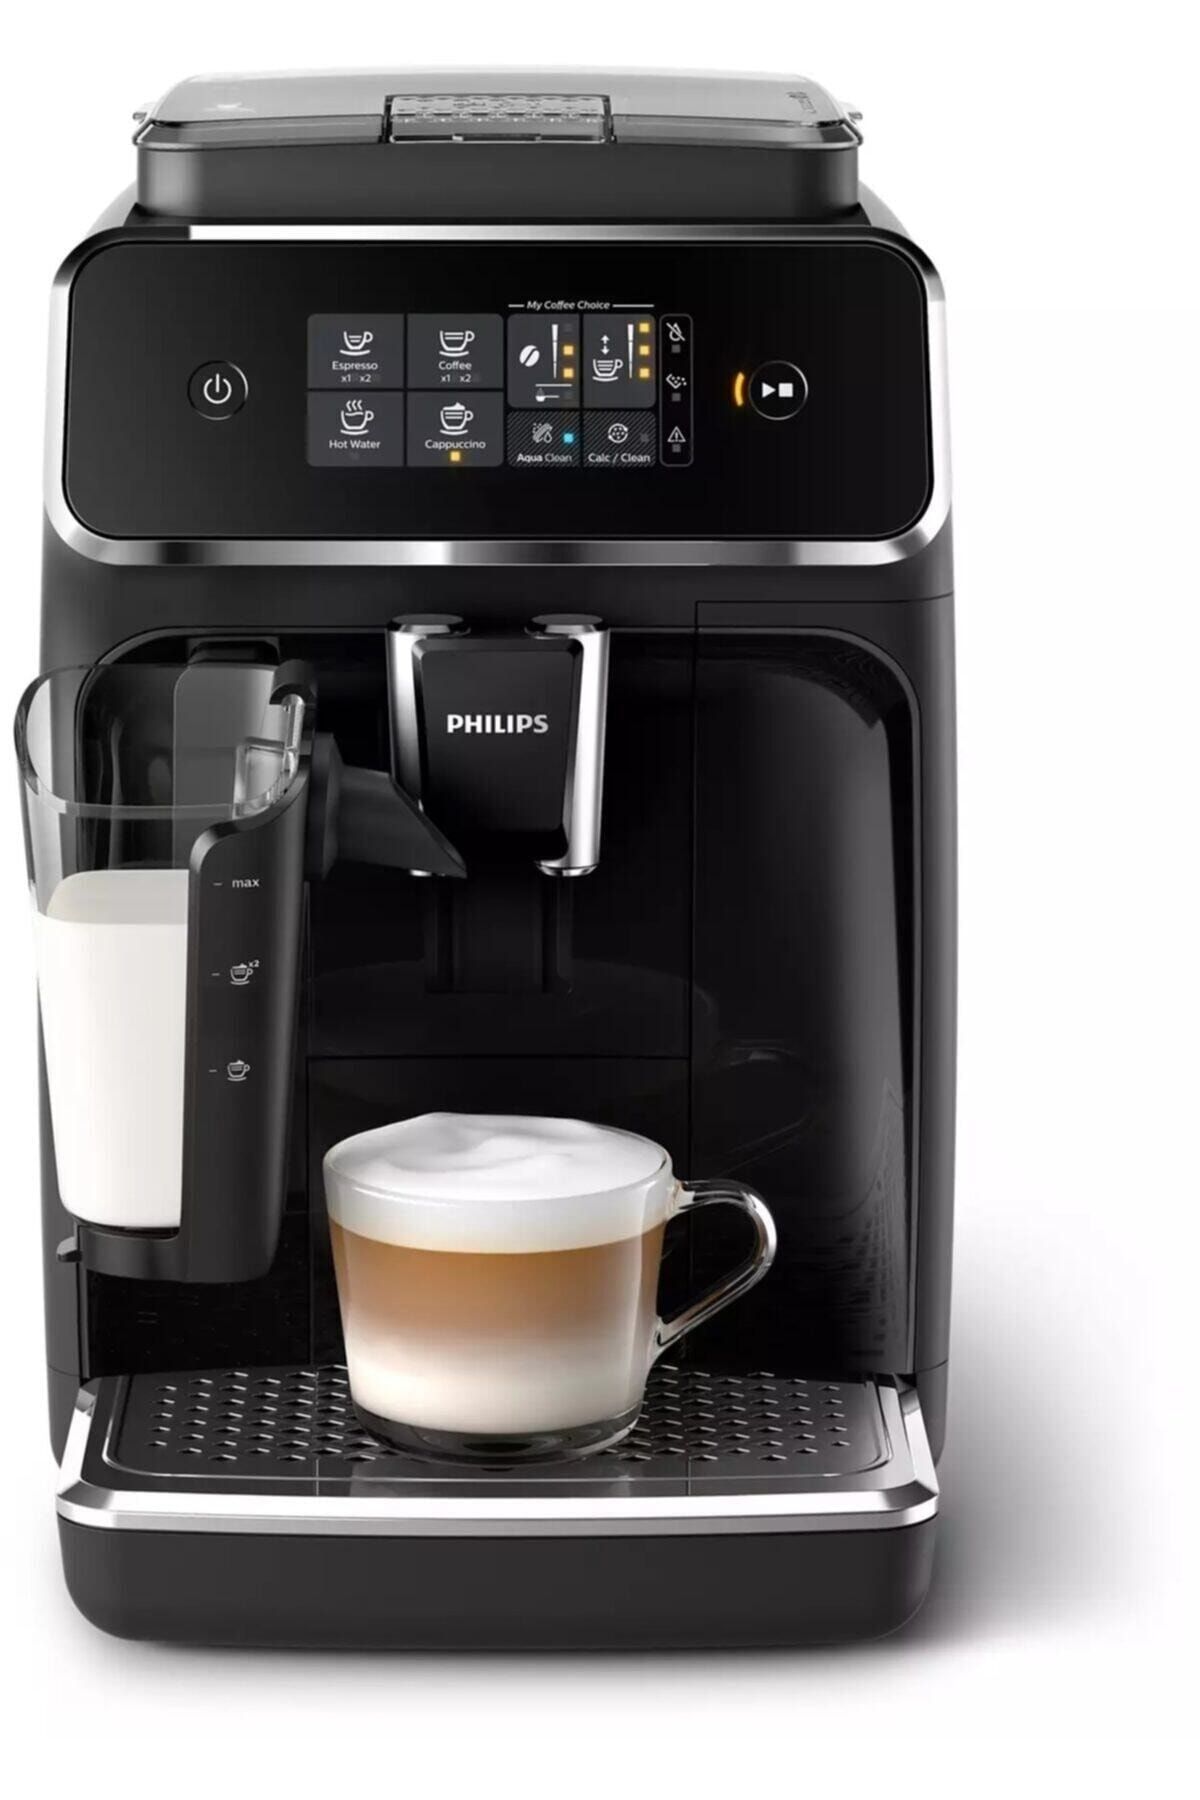 Philips Ep2231/40 Tam Otomatik Espresso Makinası, 1.8 L Kapasite, 3 Aromatik Kahve Çeşidi, Lattego S